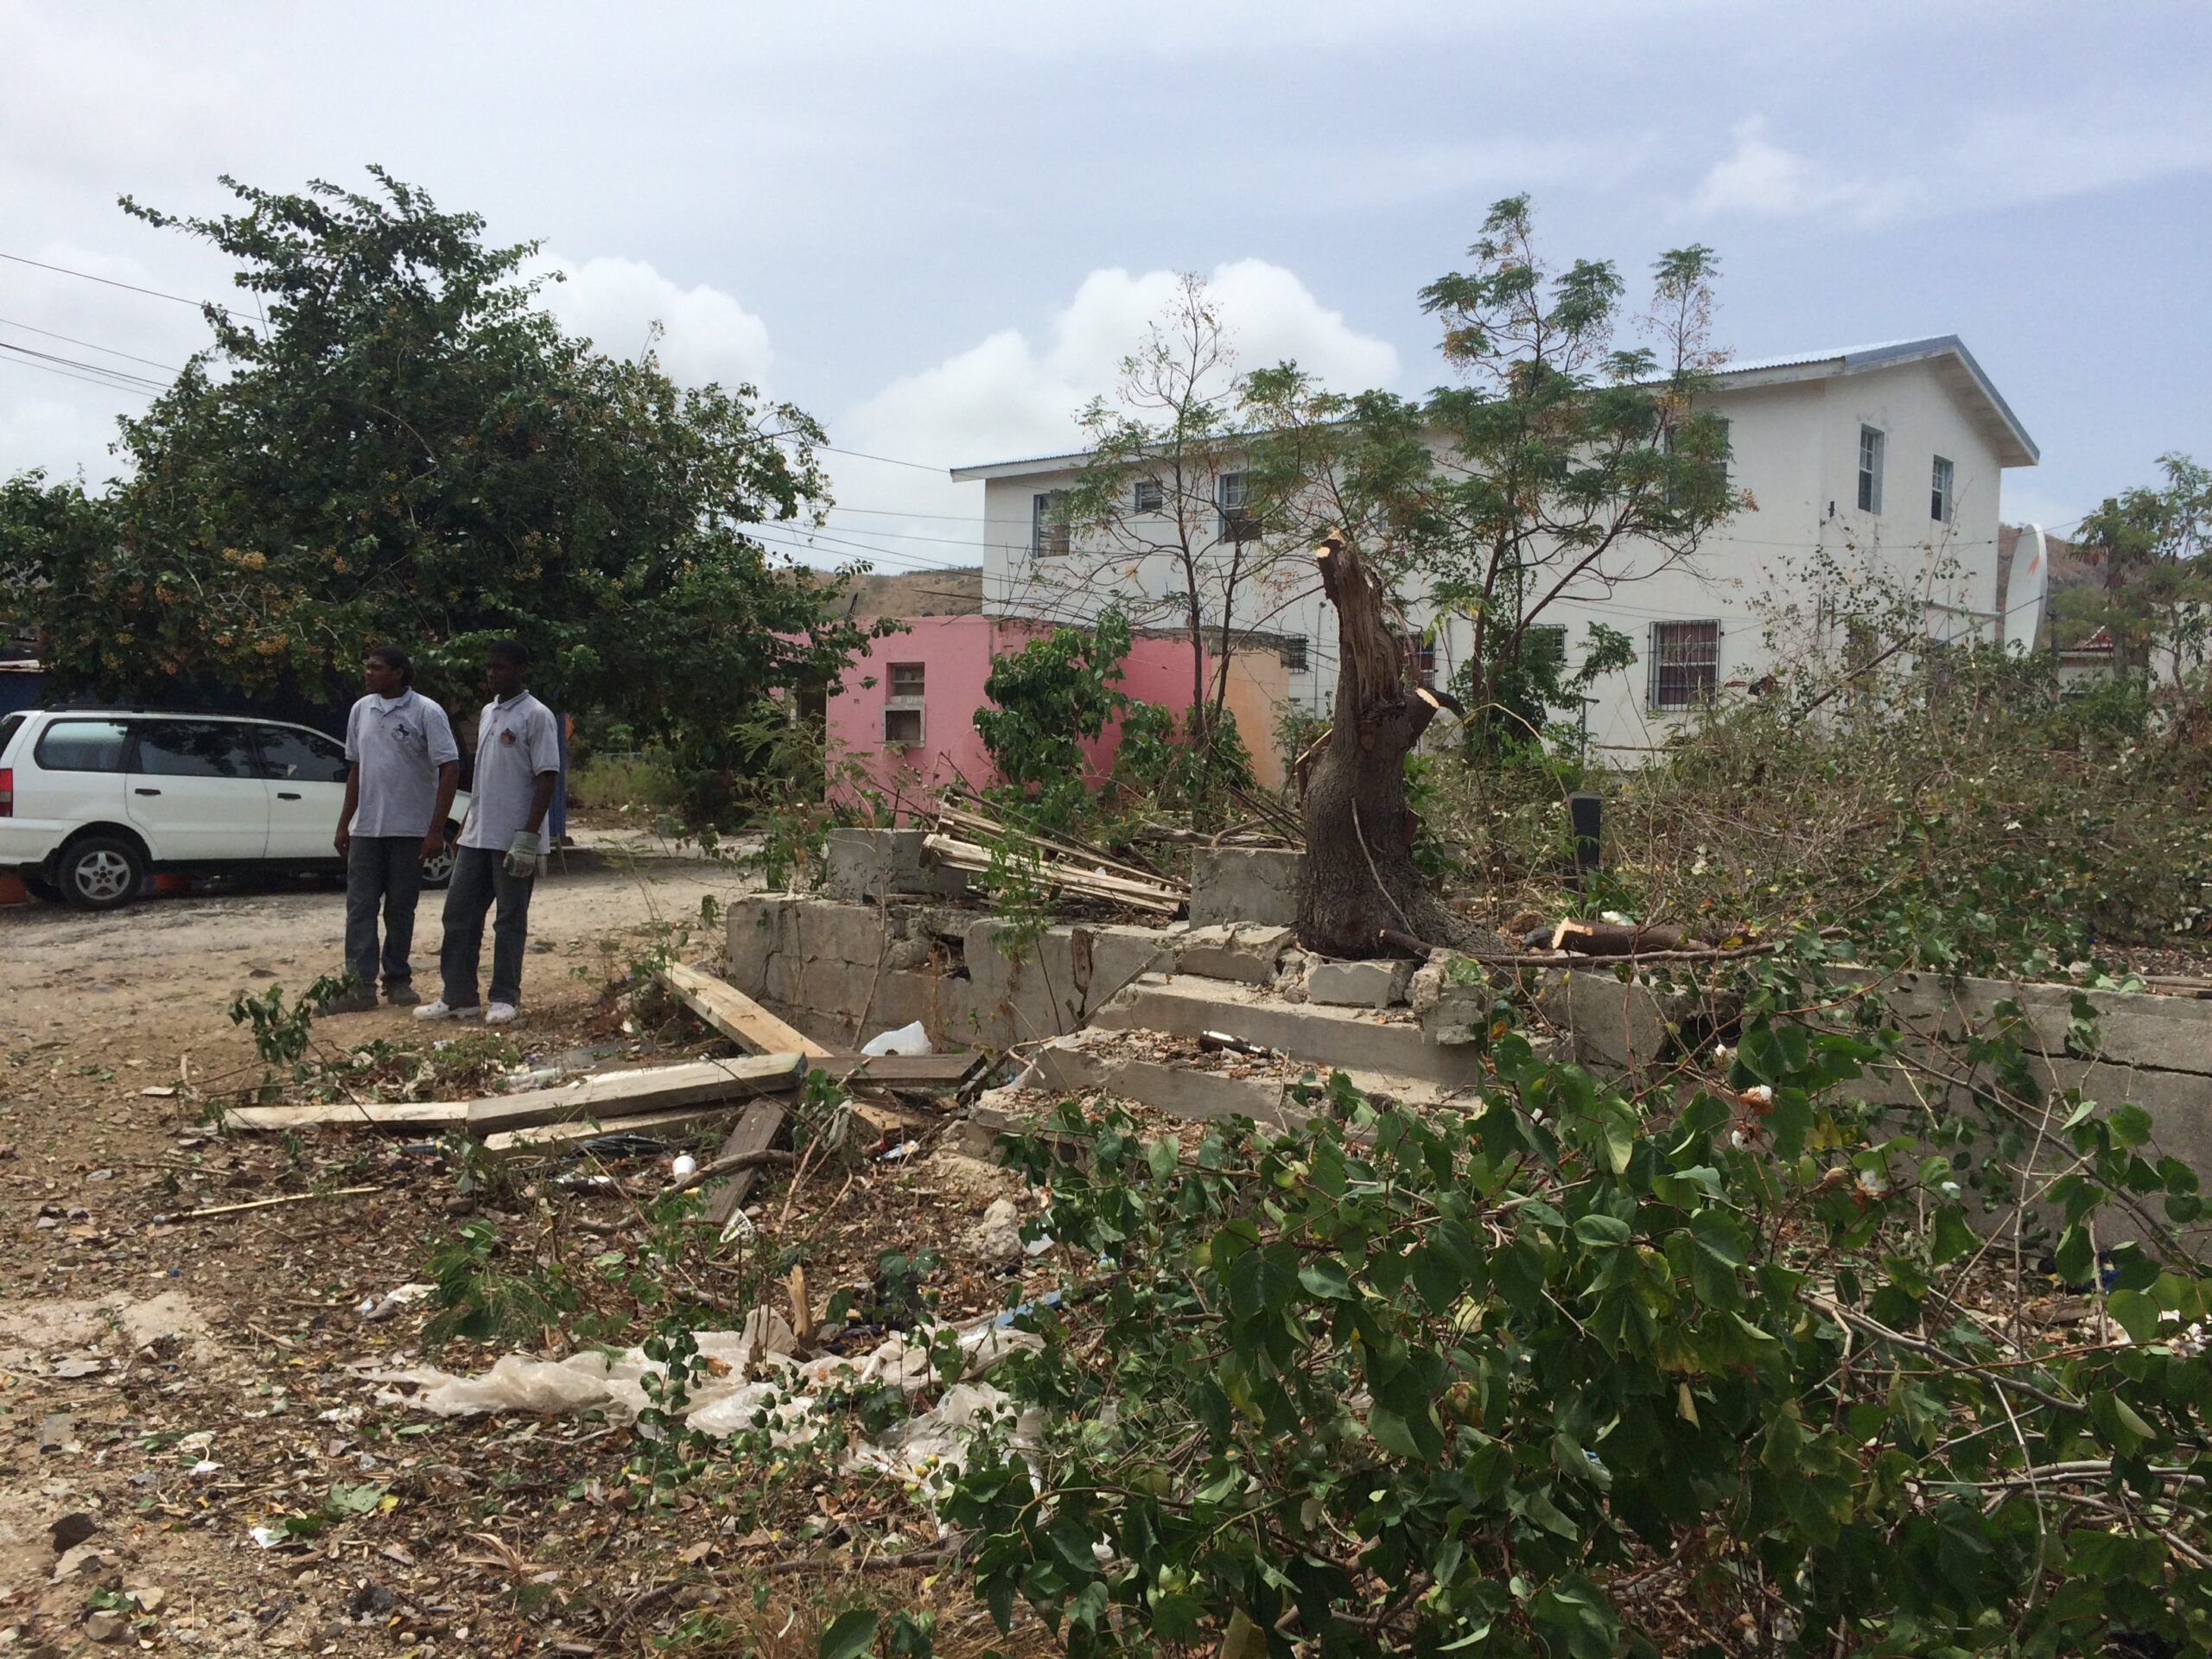 Eco Neighborhood – Sint Maarten